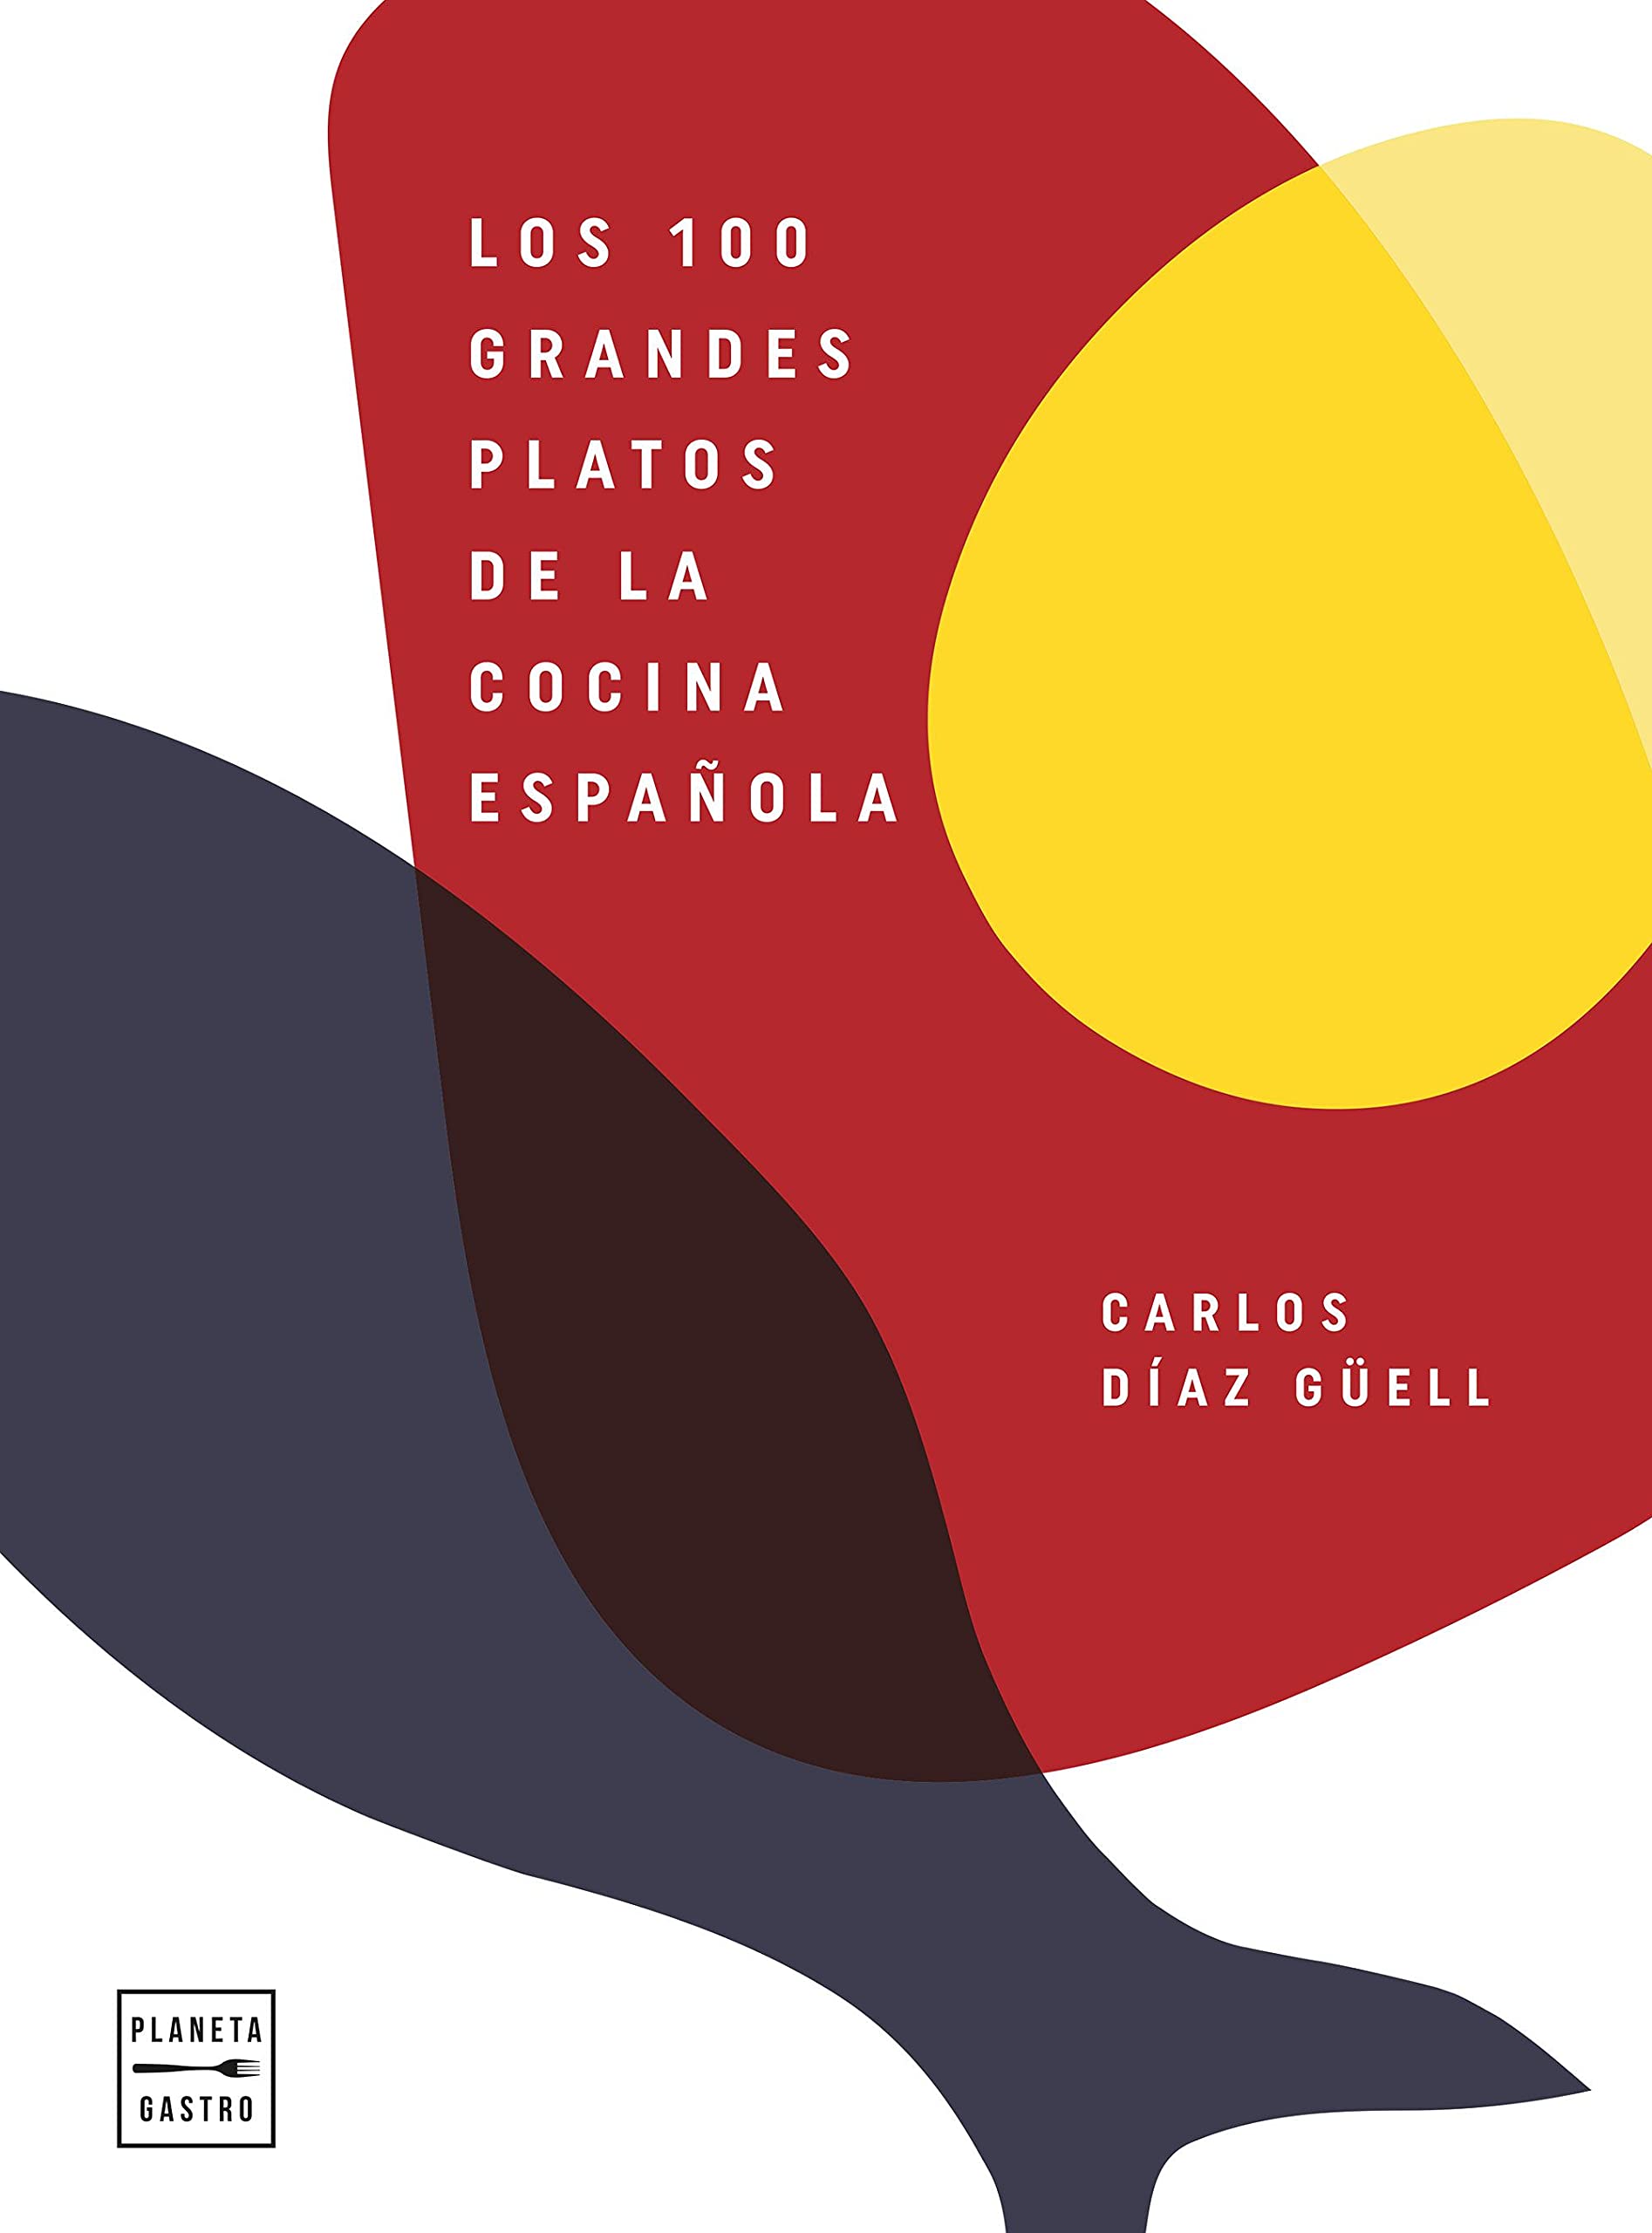 Zenda recomienda: Los 100 grandes platos de la cocina española, de Carlos Díaz Güell